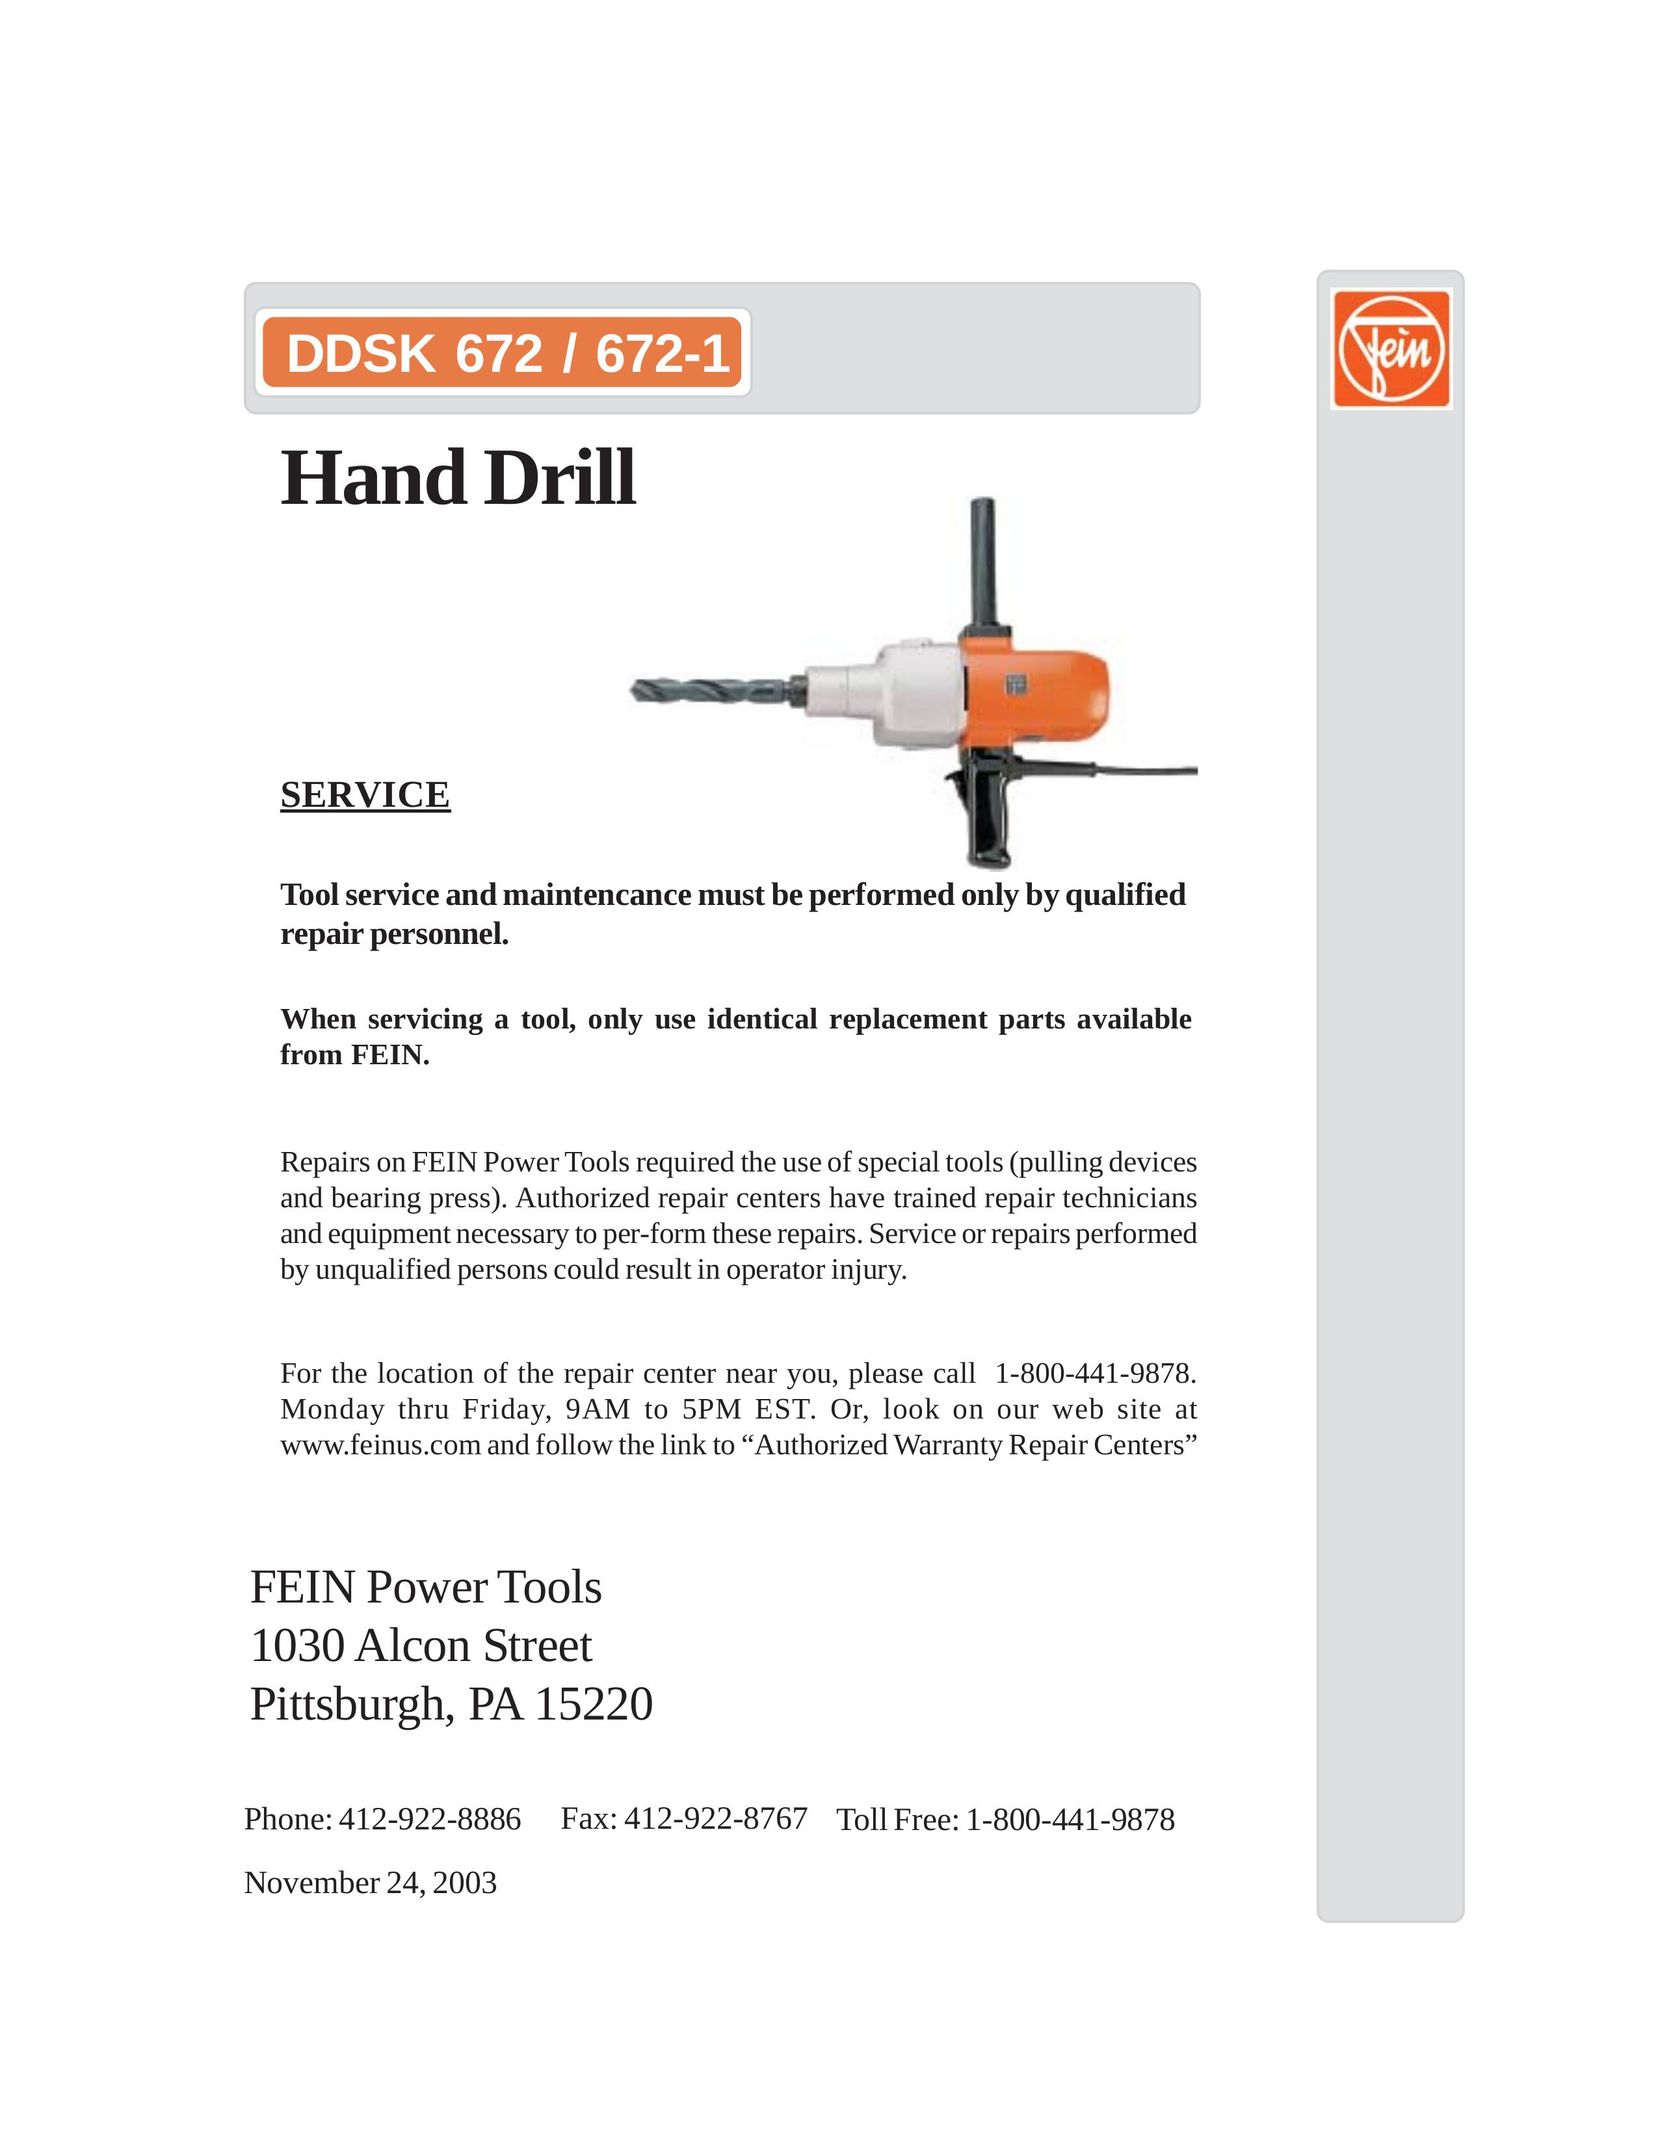 FEIN Power Tools DDSK 672-1 Drill User Manual